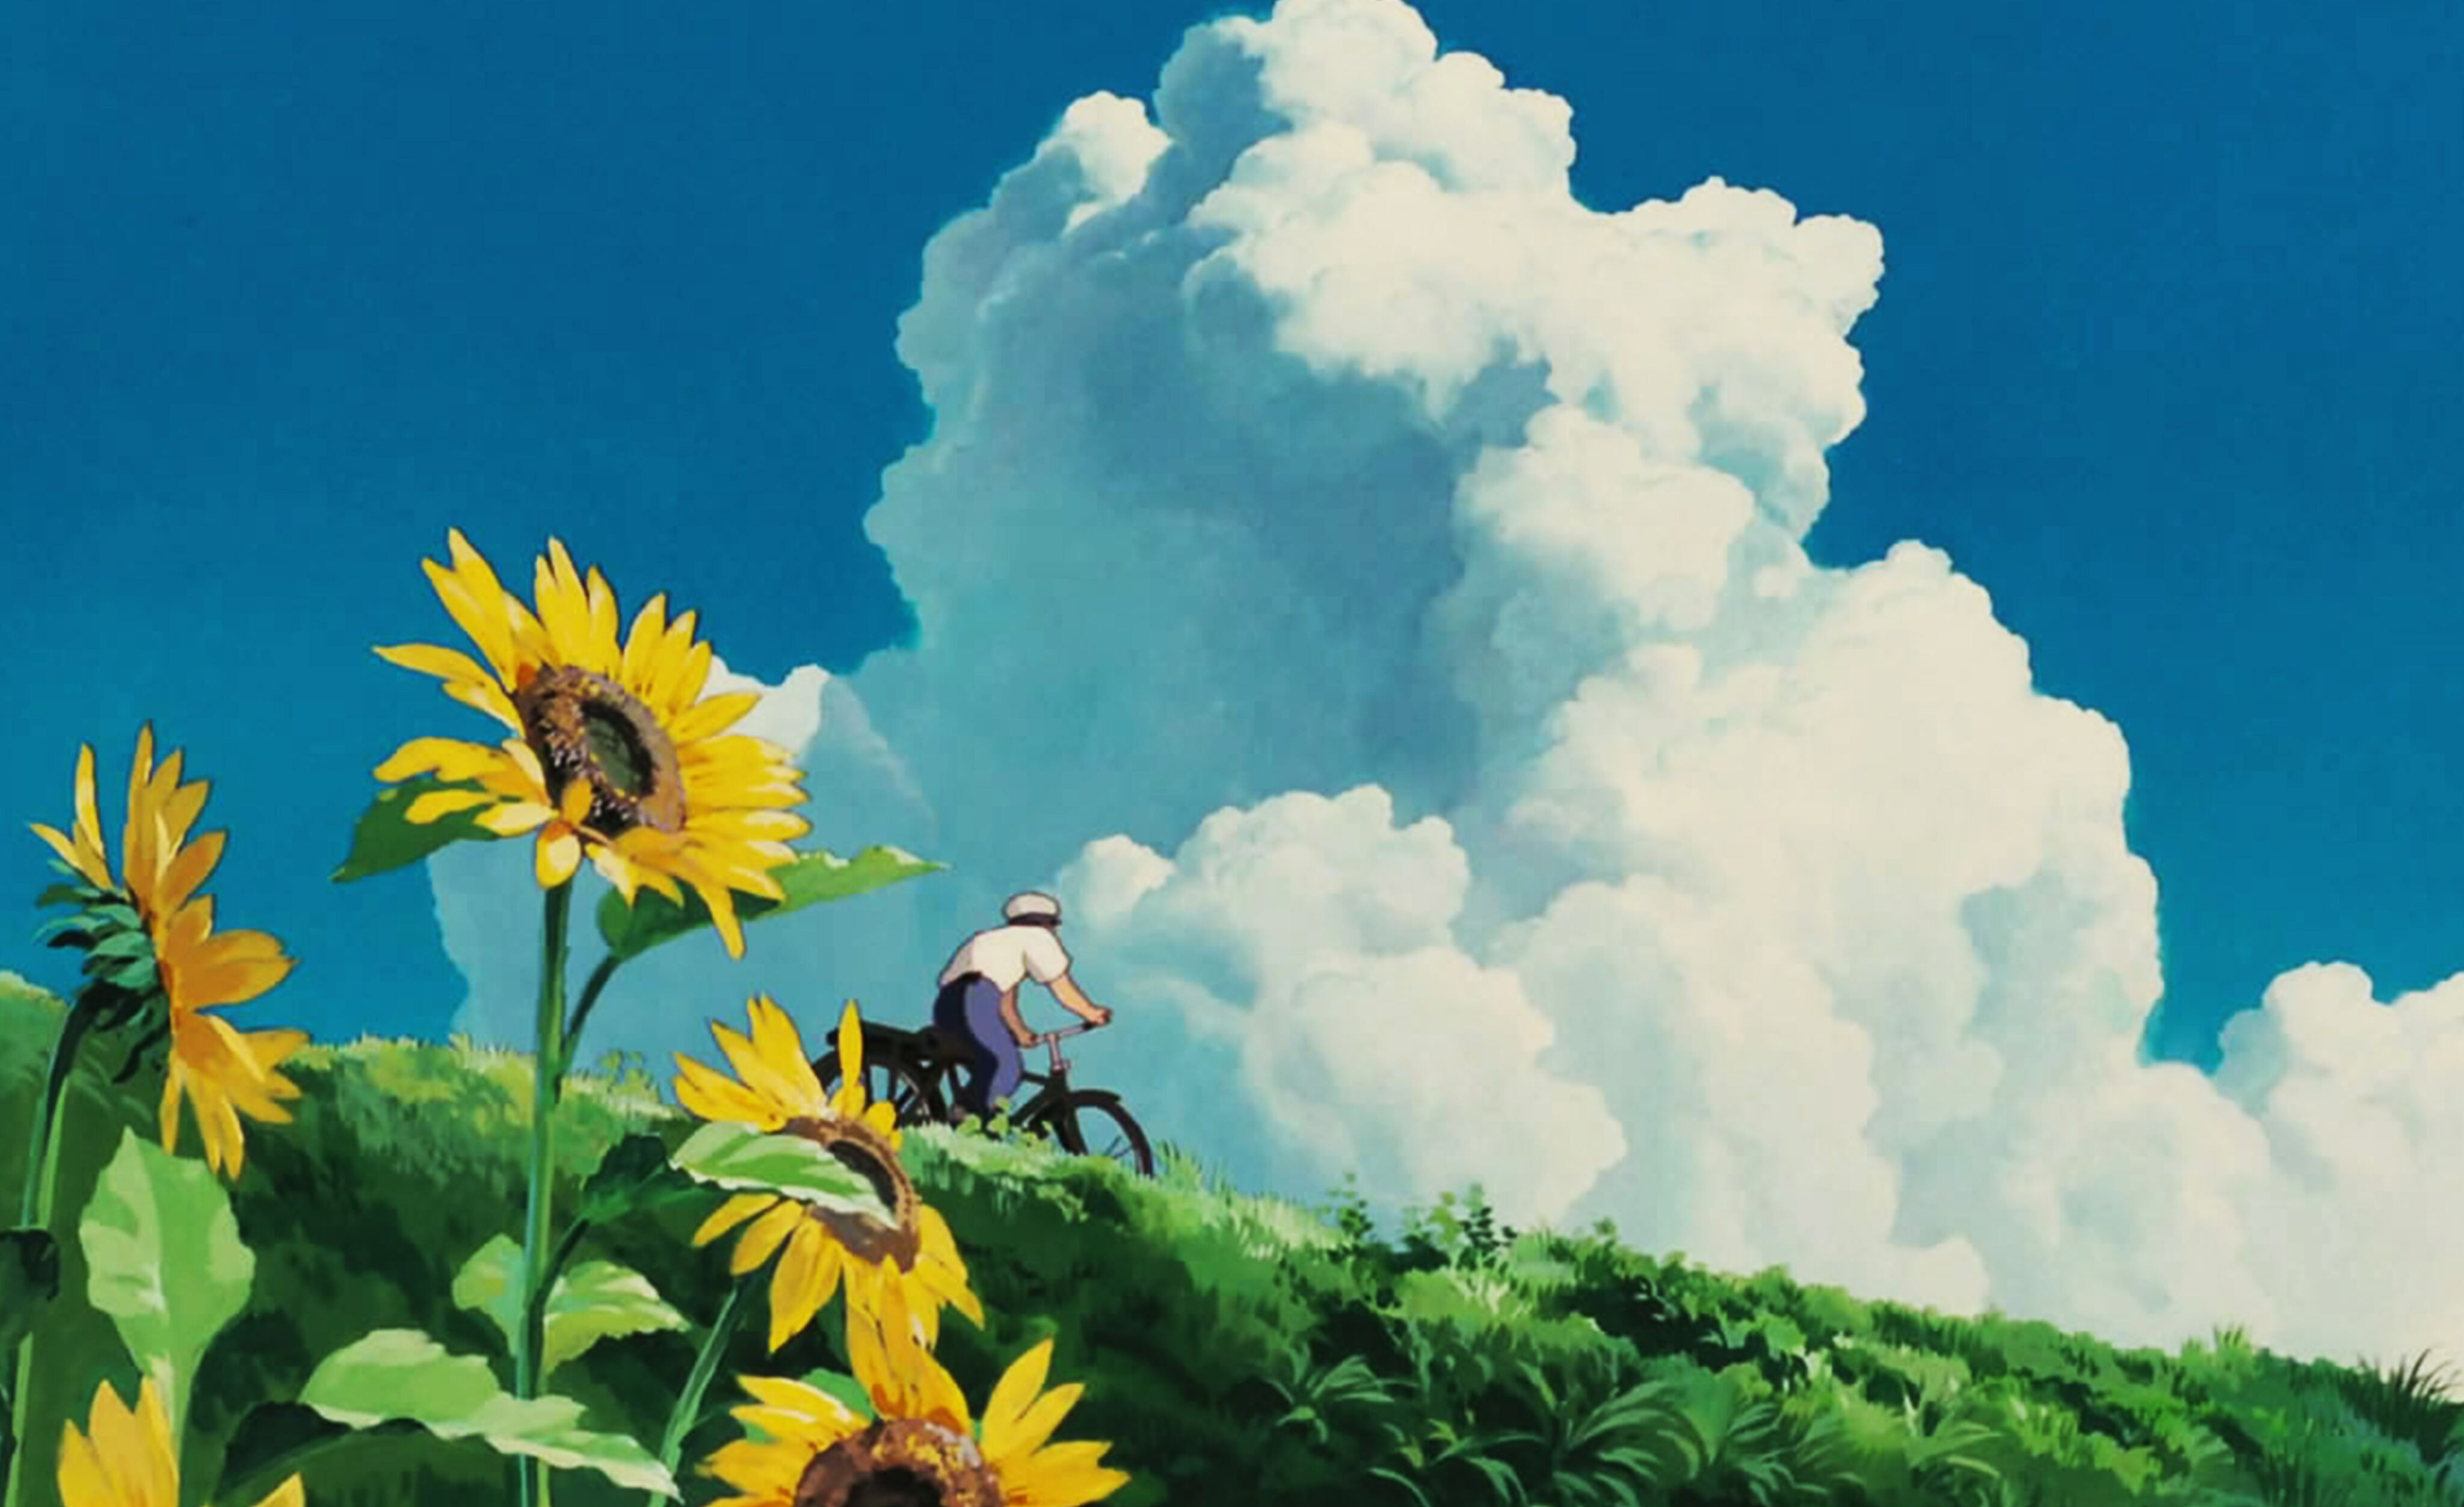 10部电影带你看懂动画大师宫崎骏